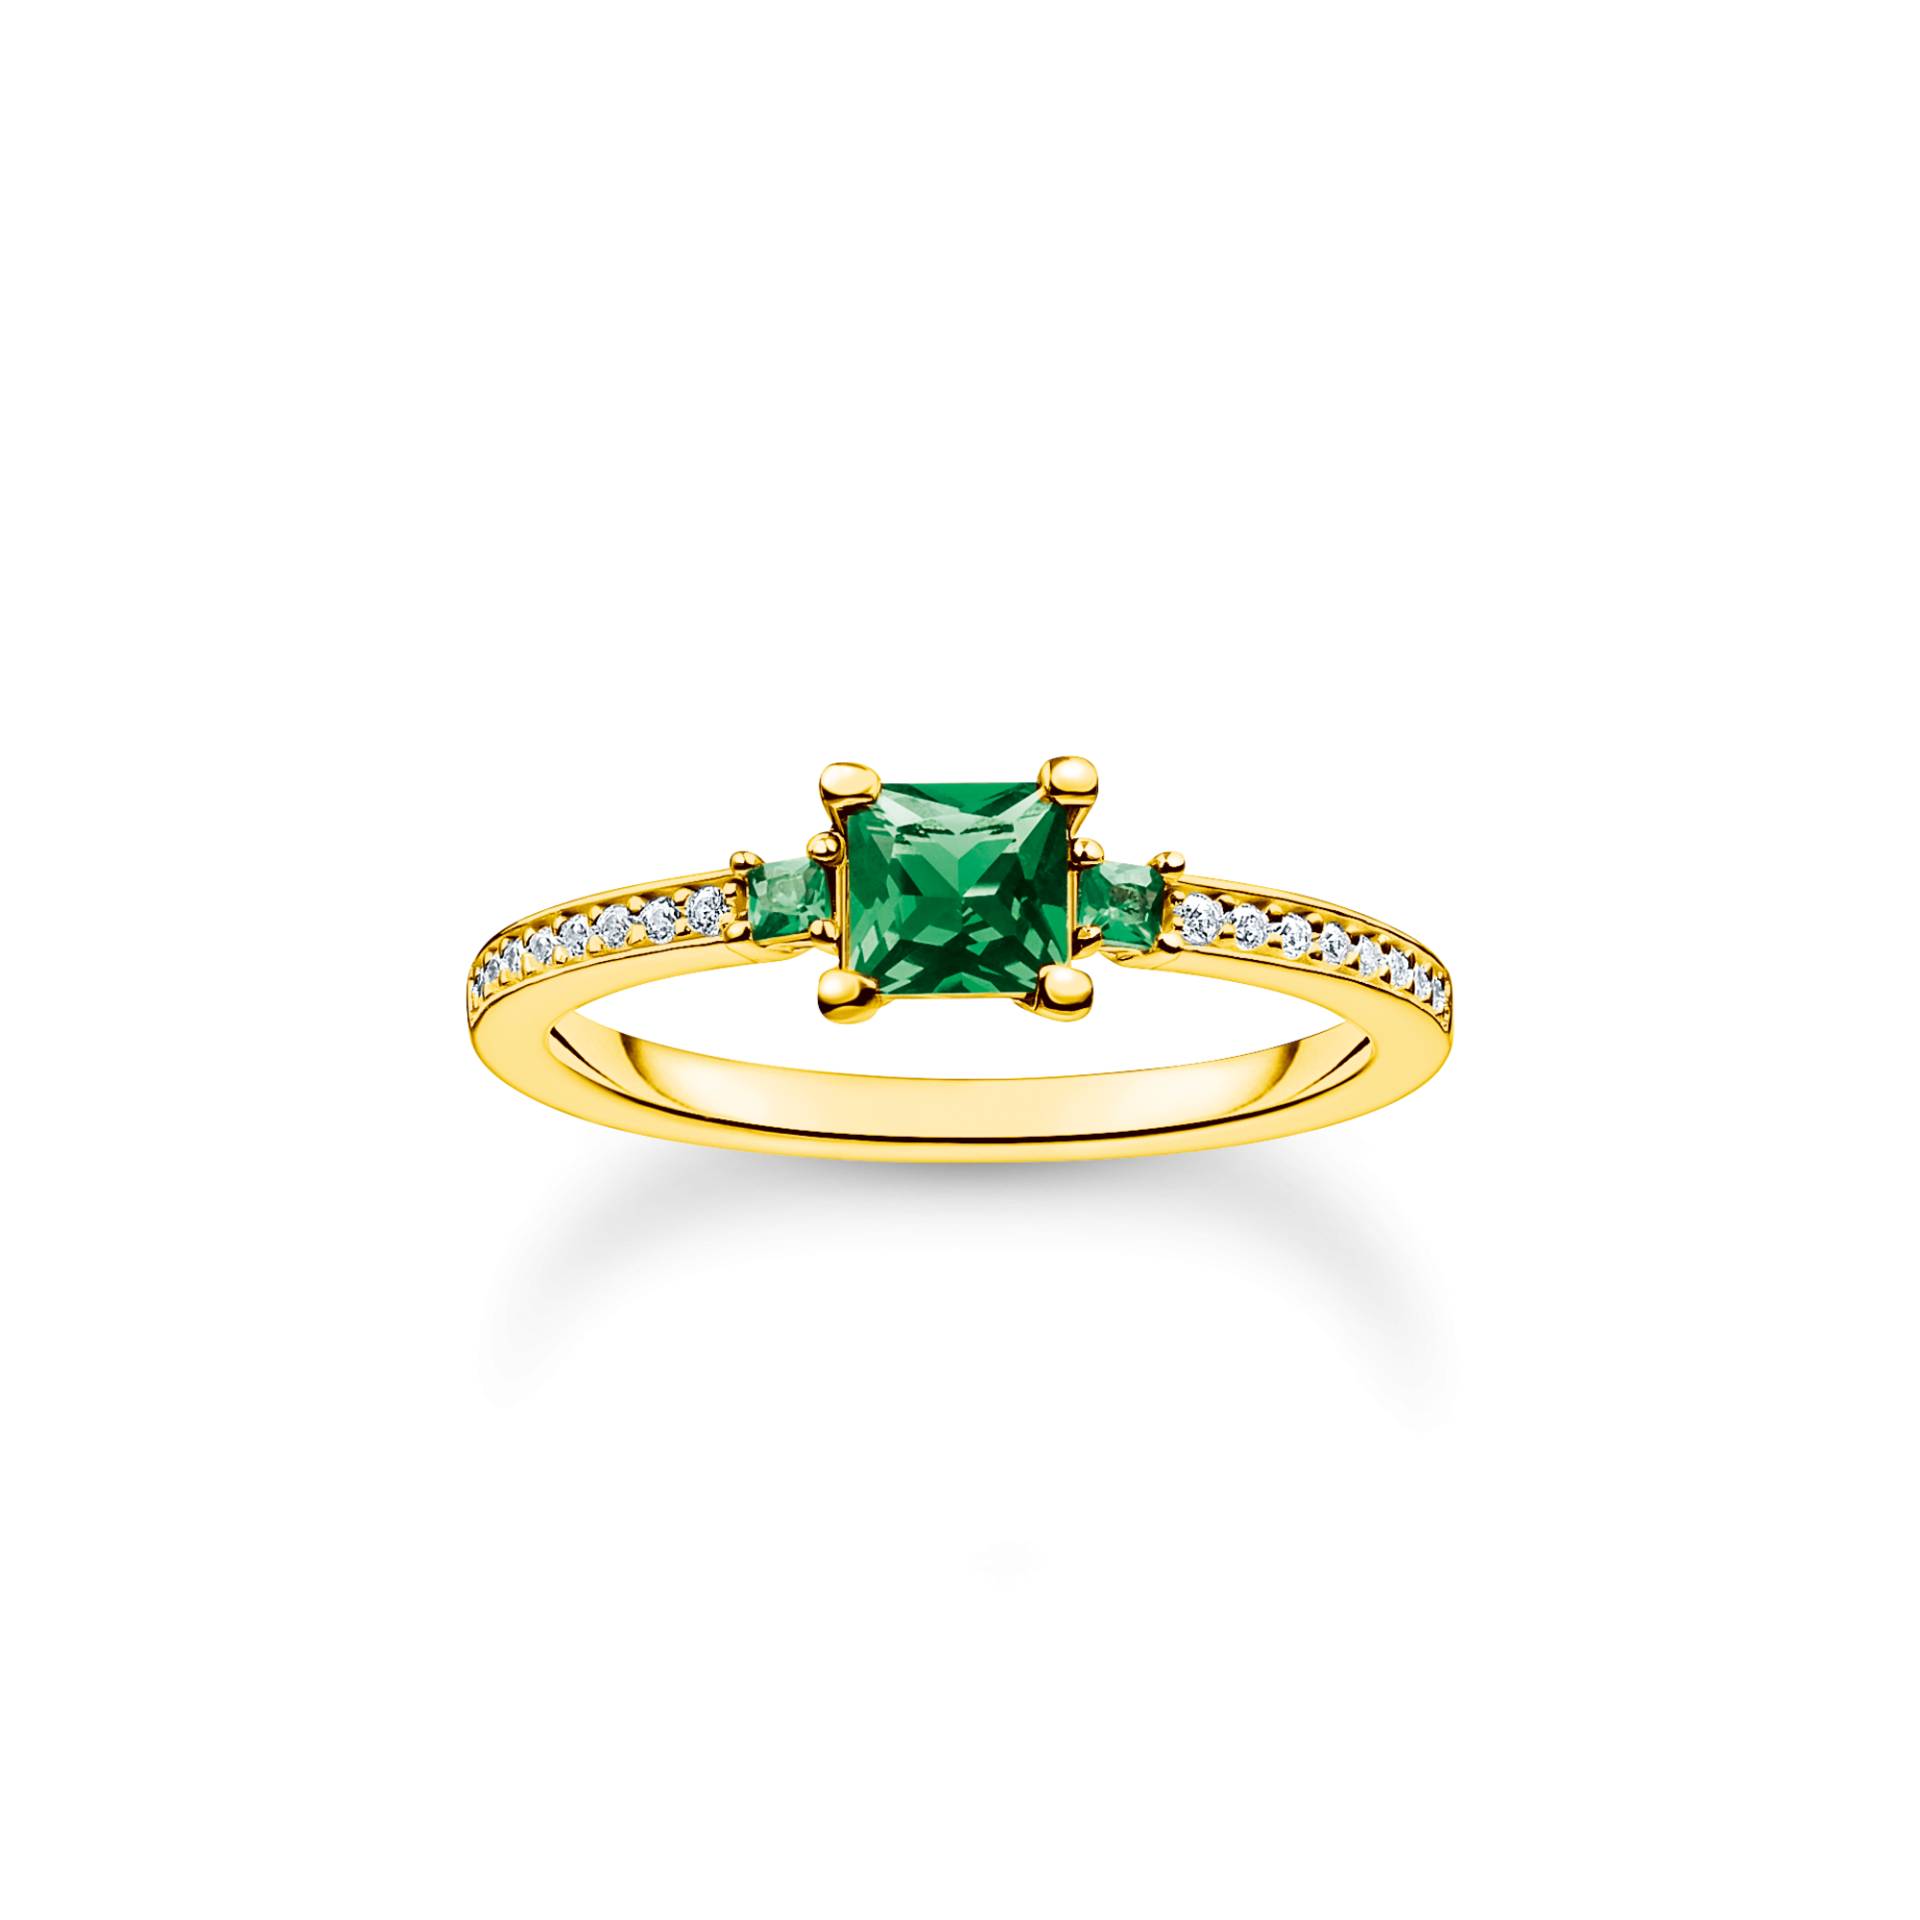 Thomas Sabo Ring mit grünen und weißen Steinen gold grün TR2402-971-6-56 von Thomas Sabo